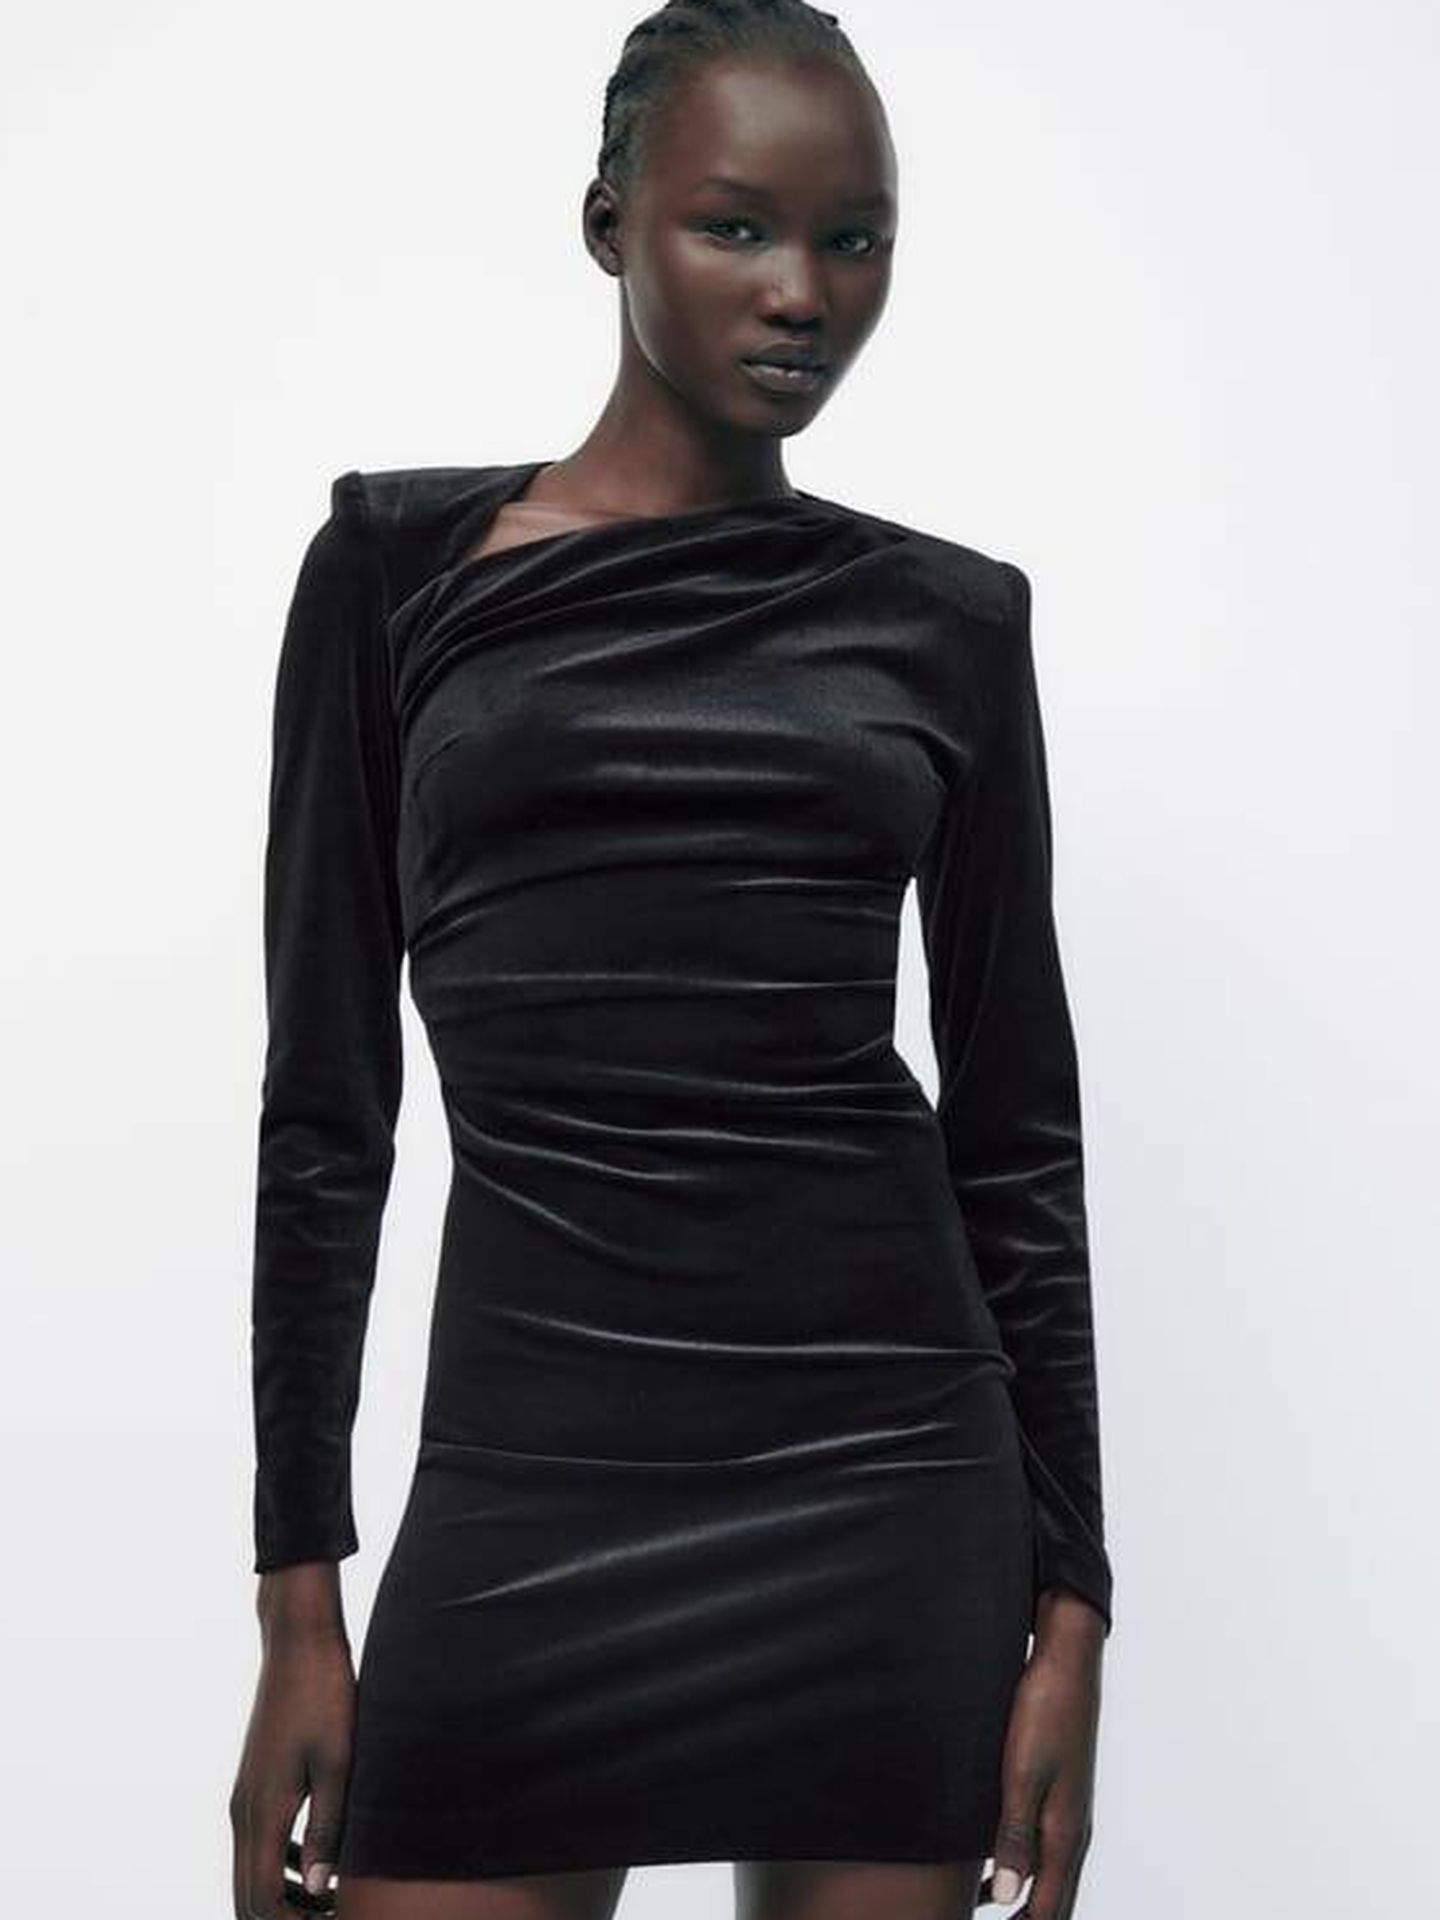 relay closet Stereotype Elige tu nuevo vestido drapeado de Zara: ¿de terciopelo o de efecto piel?